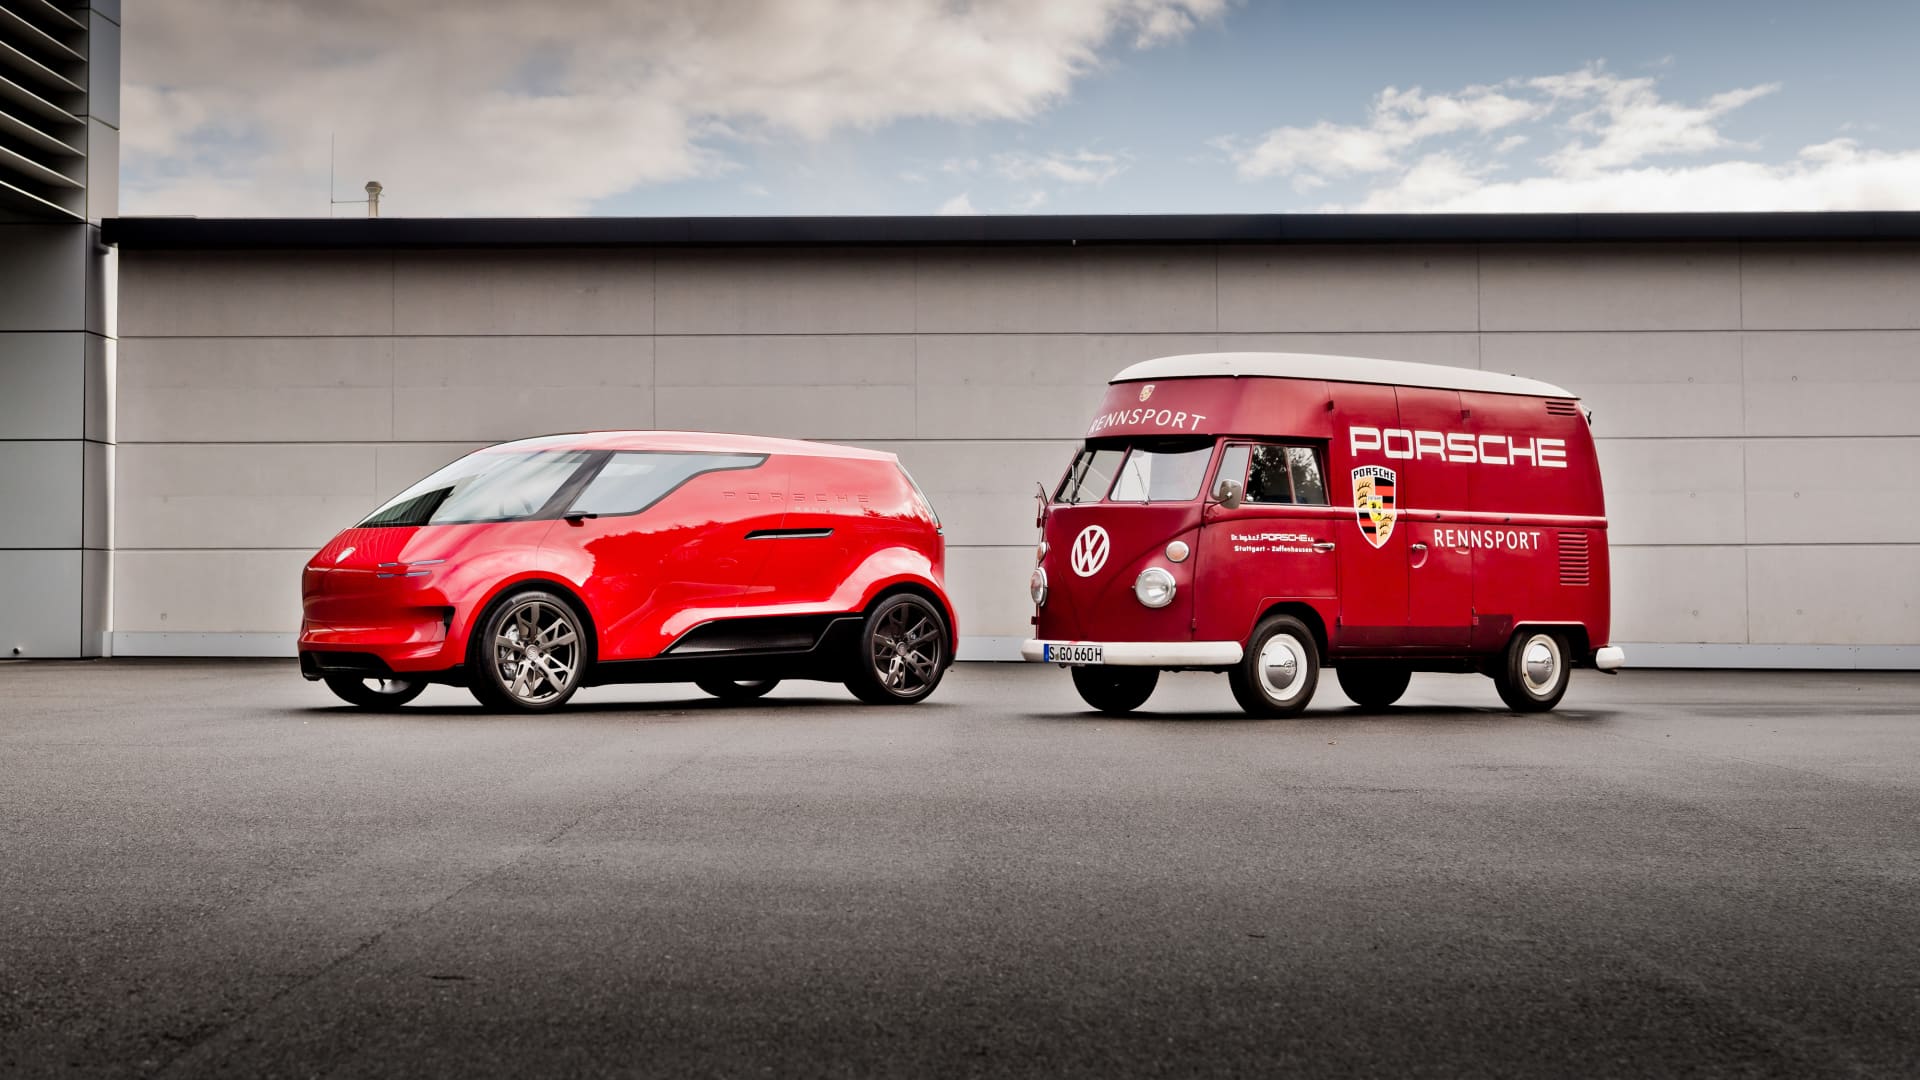 Porsche's electric van concept featured next to a Volkswagen bus.